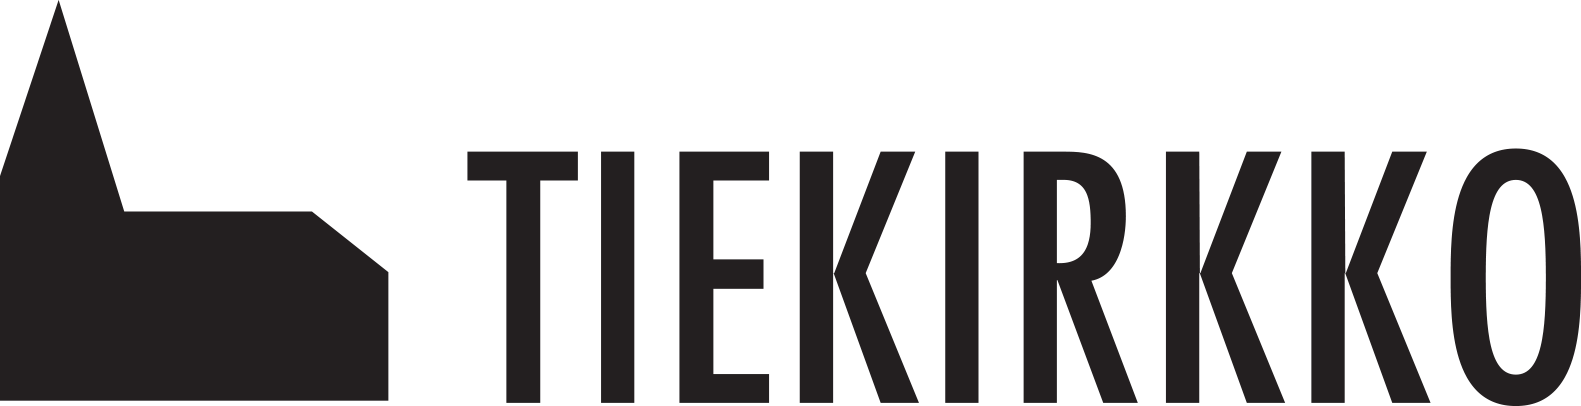 Kuvassa Tiekirkko logo. Valkoisella pohjalla musta kirkko ja teksti Tiekirkko.